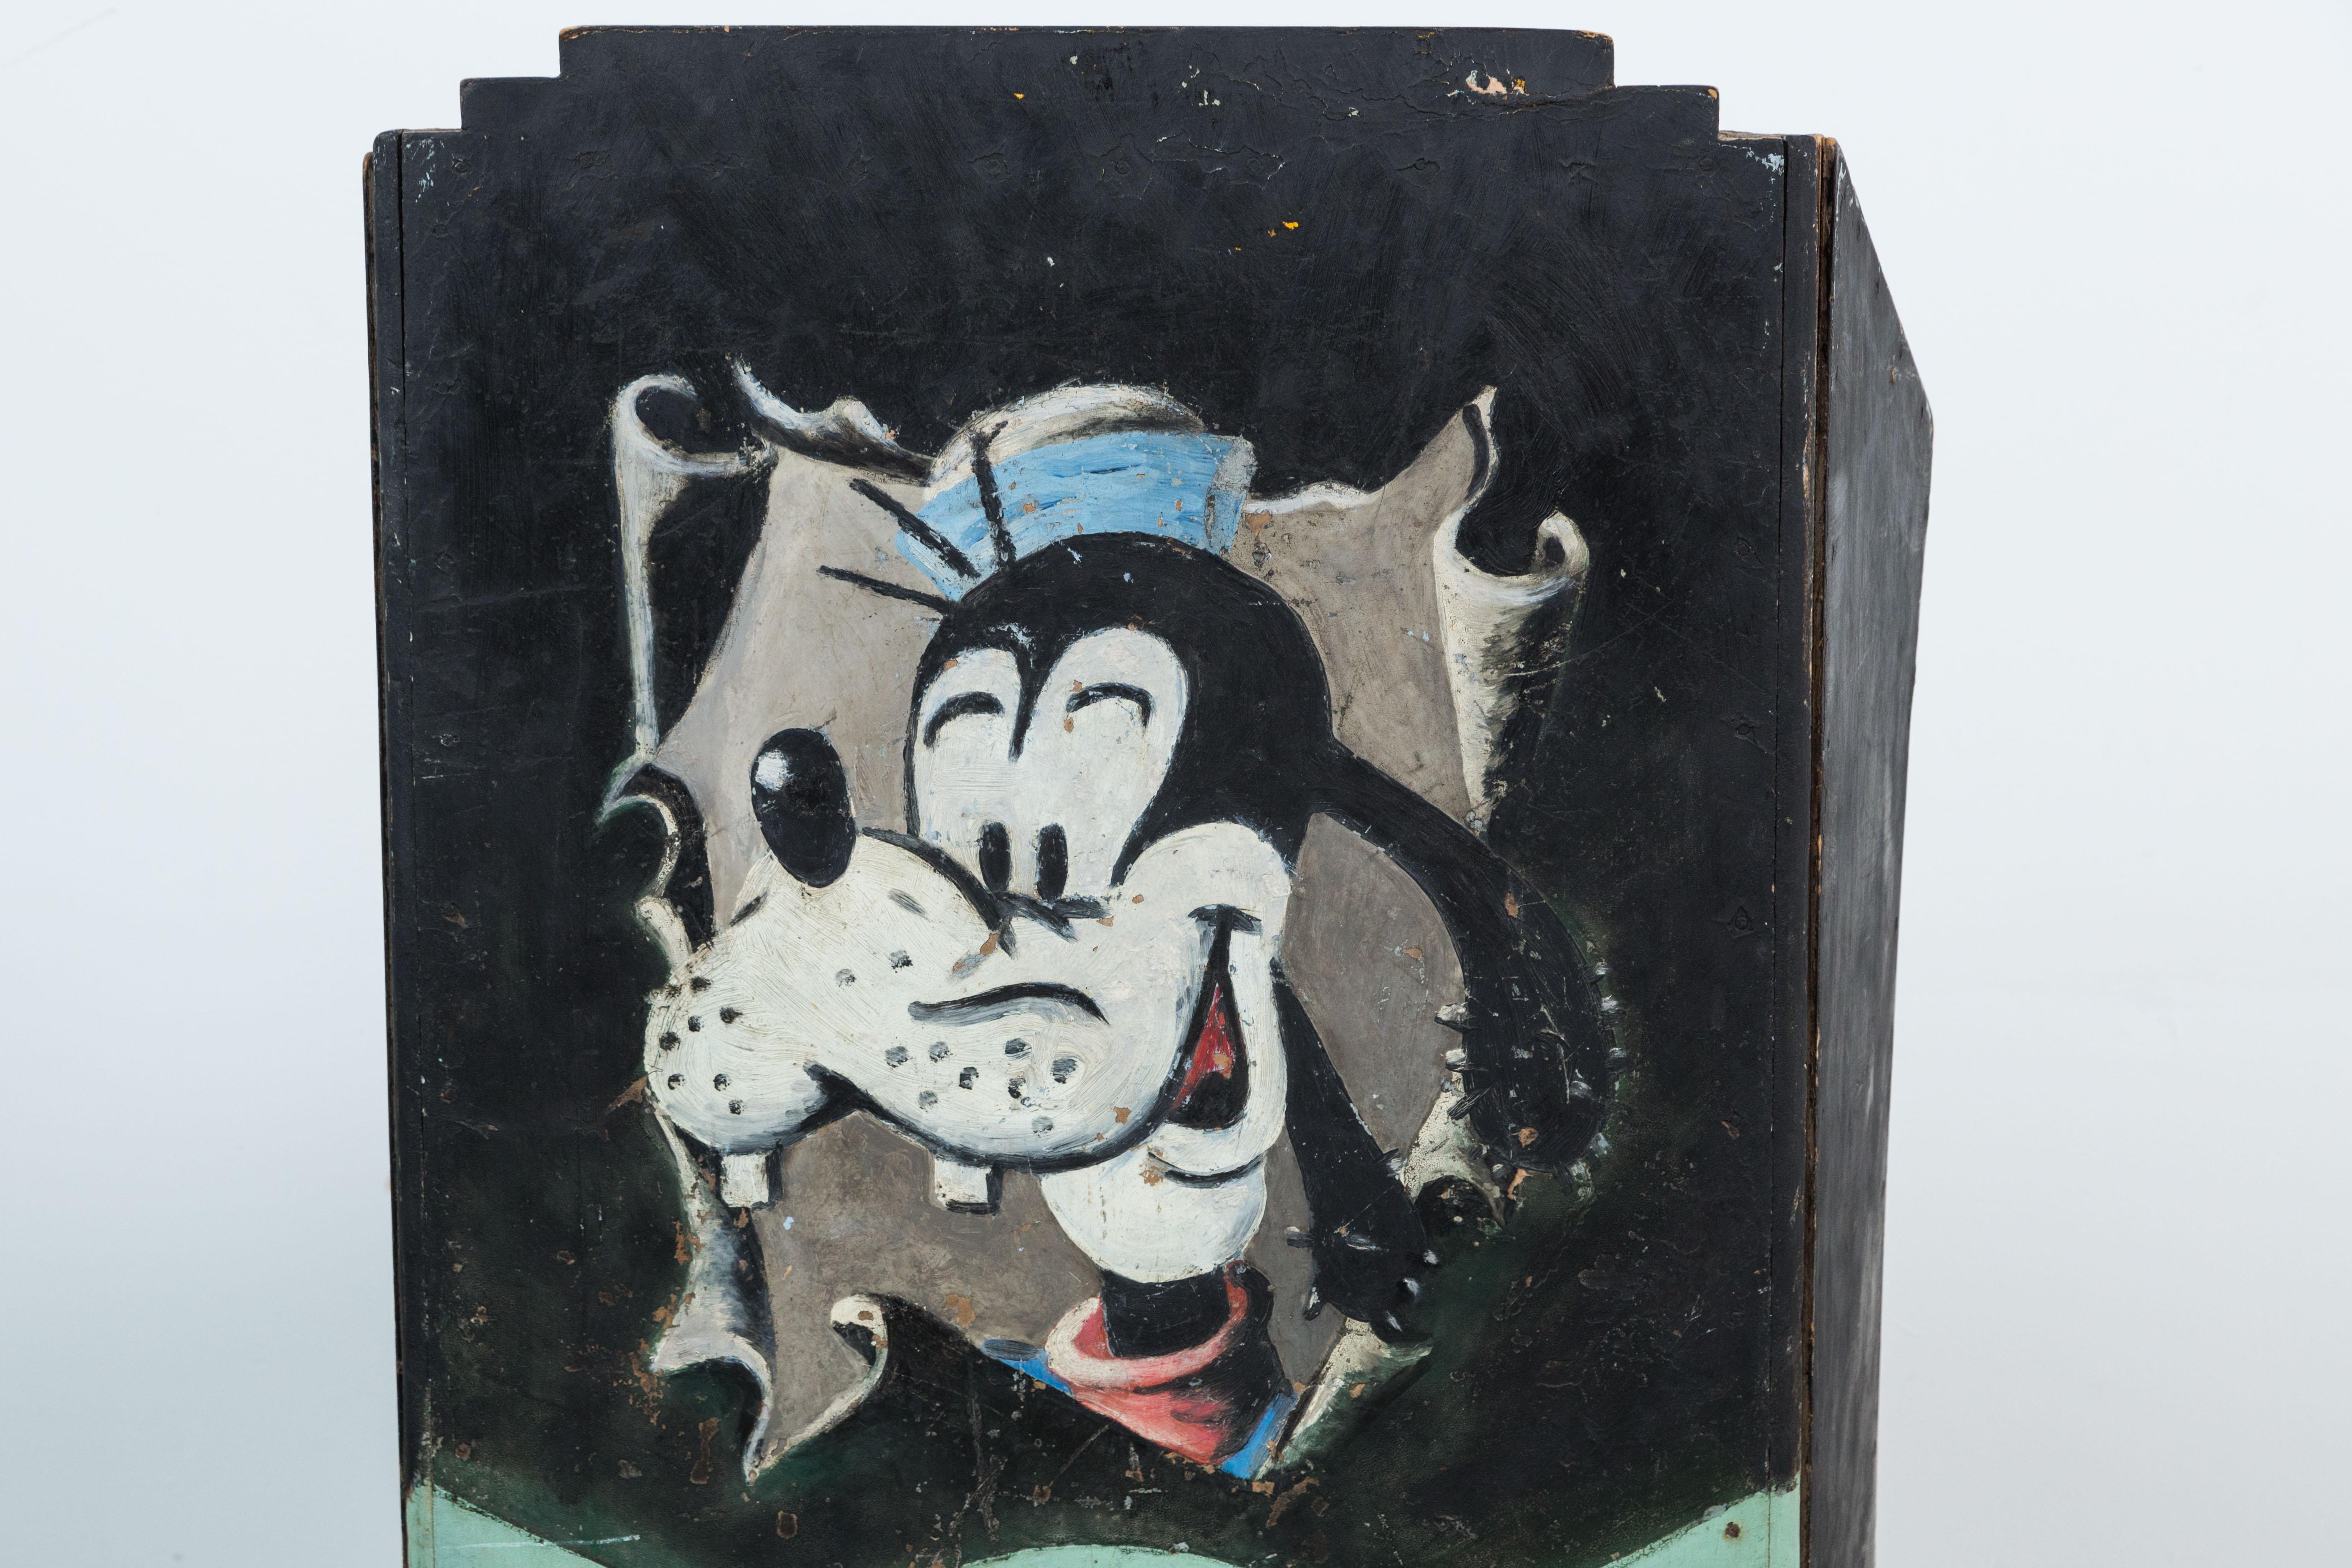 Handbemalter klappbarer Notenständer, ca. 1950er Jahre. Tolles Volkskunstdesign und Goofy Hund gemalt. Möglicherweise aus der Jazz Mill in Phoenix. Toller Wandbehang.

Im geöffneten Zustand beträgt die Tiefe etwa 12,5